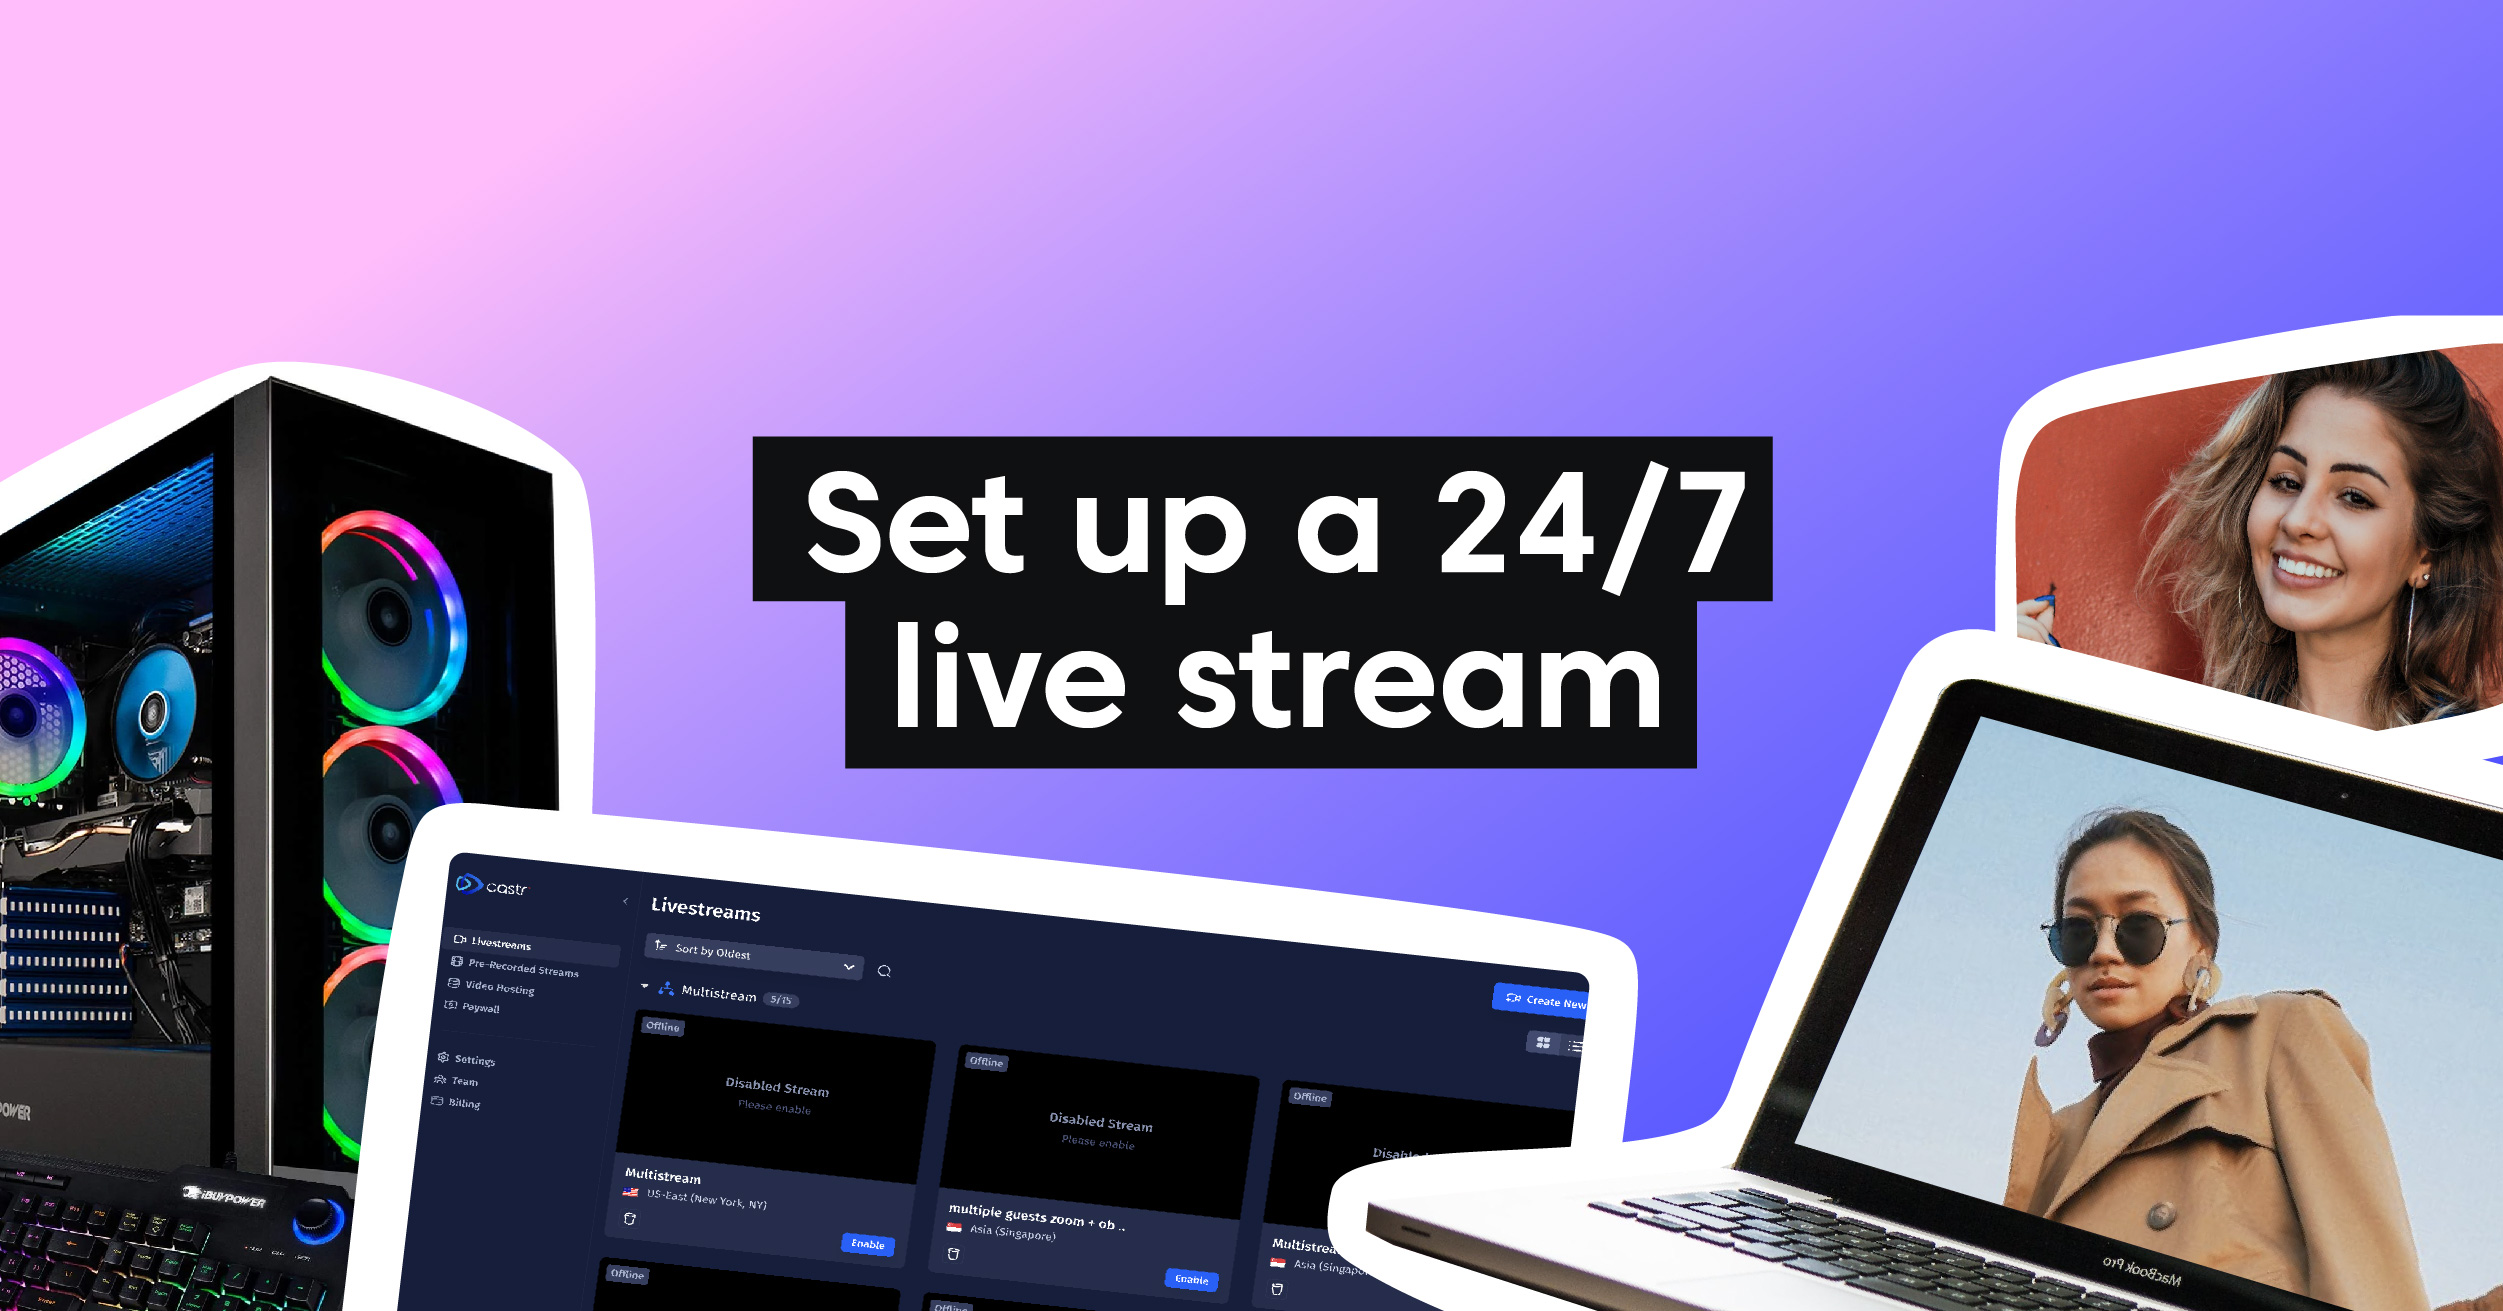 How to Set Up a 24/7 Live Stream with Castr?